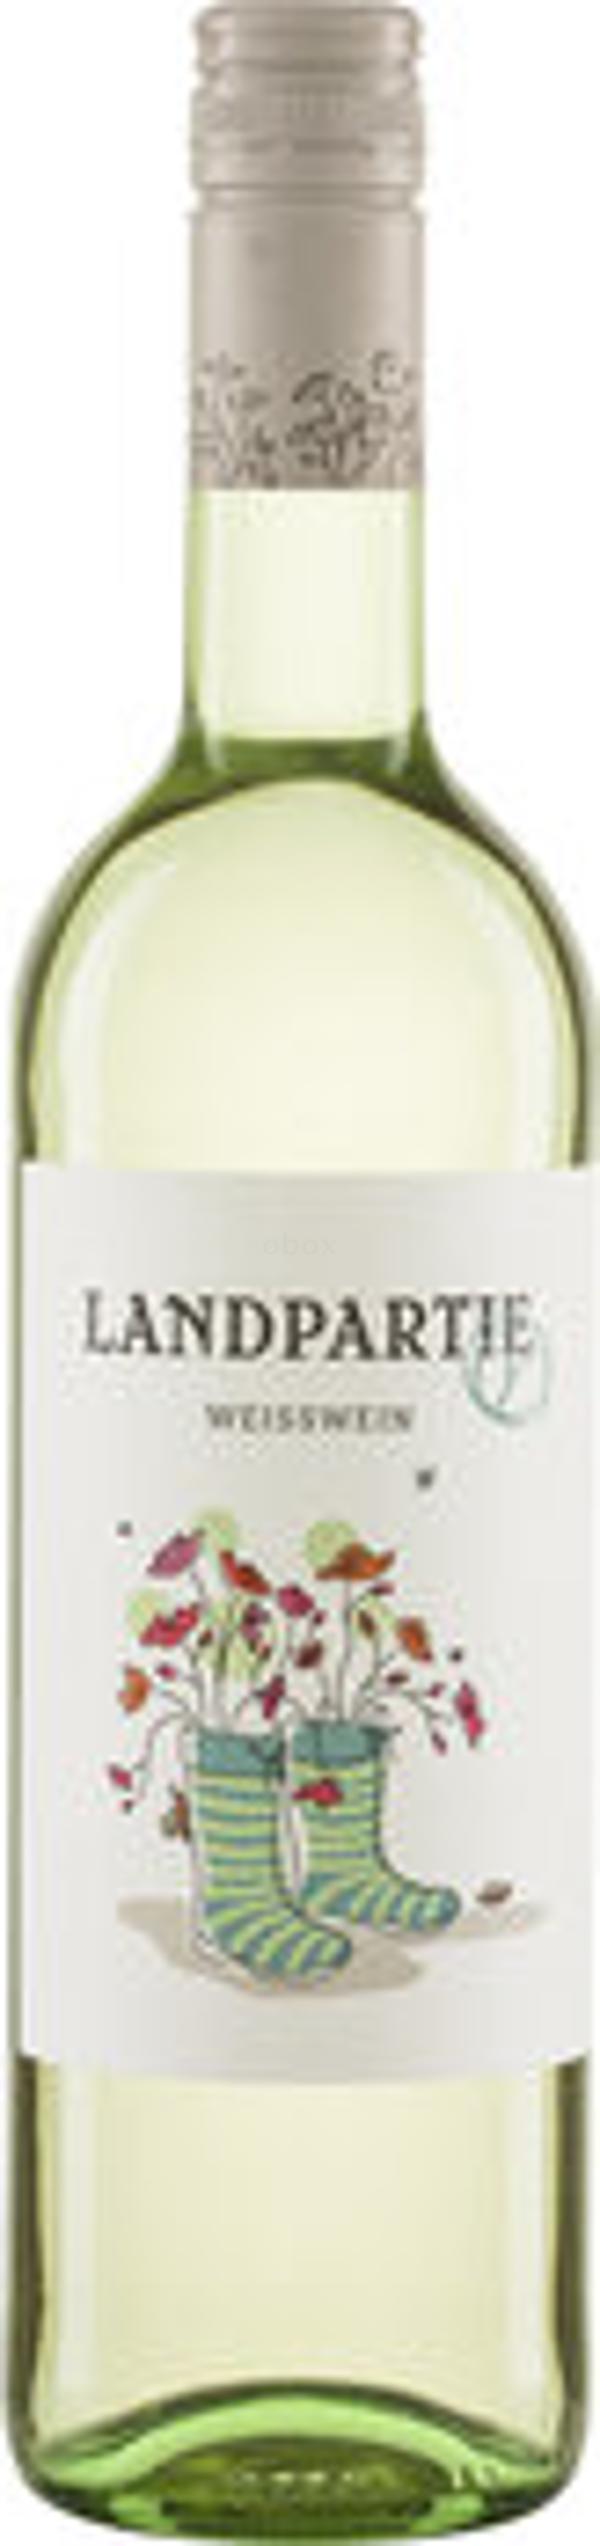 Produktfoto zu Landpartie Weißwein Kiste 6*0,75L